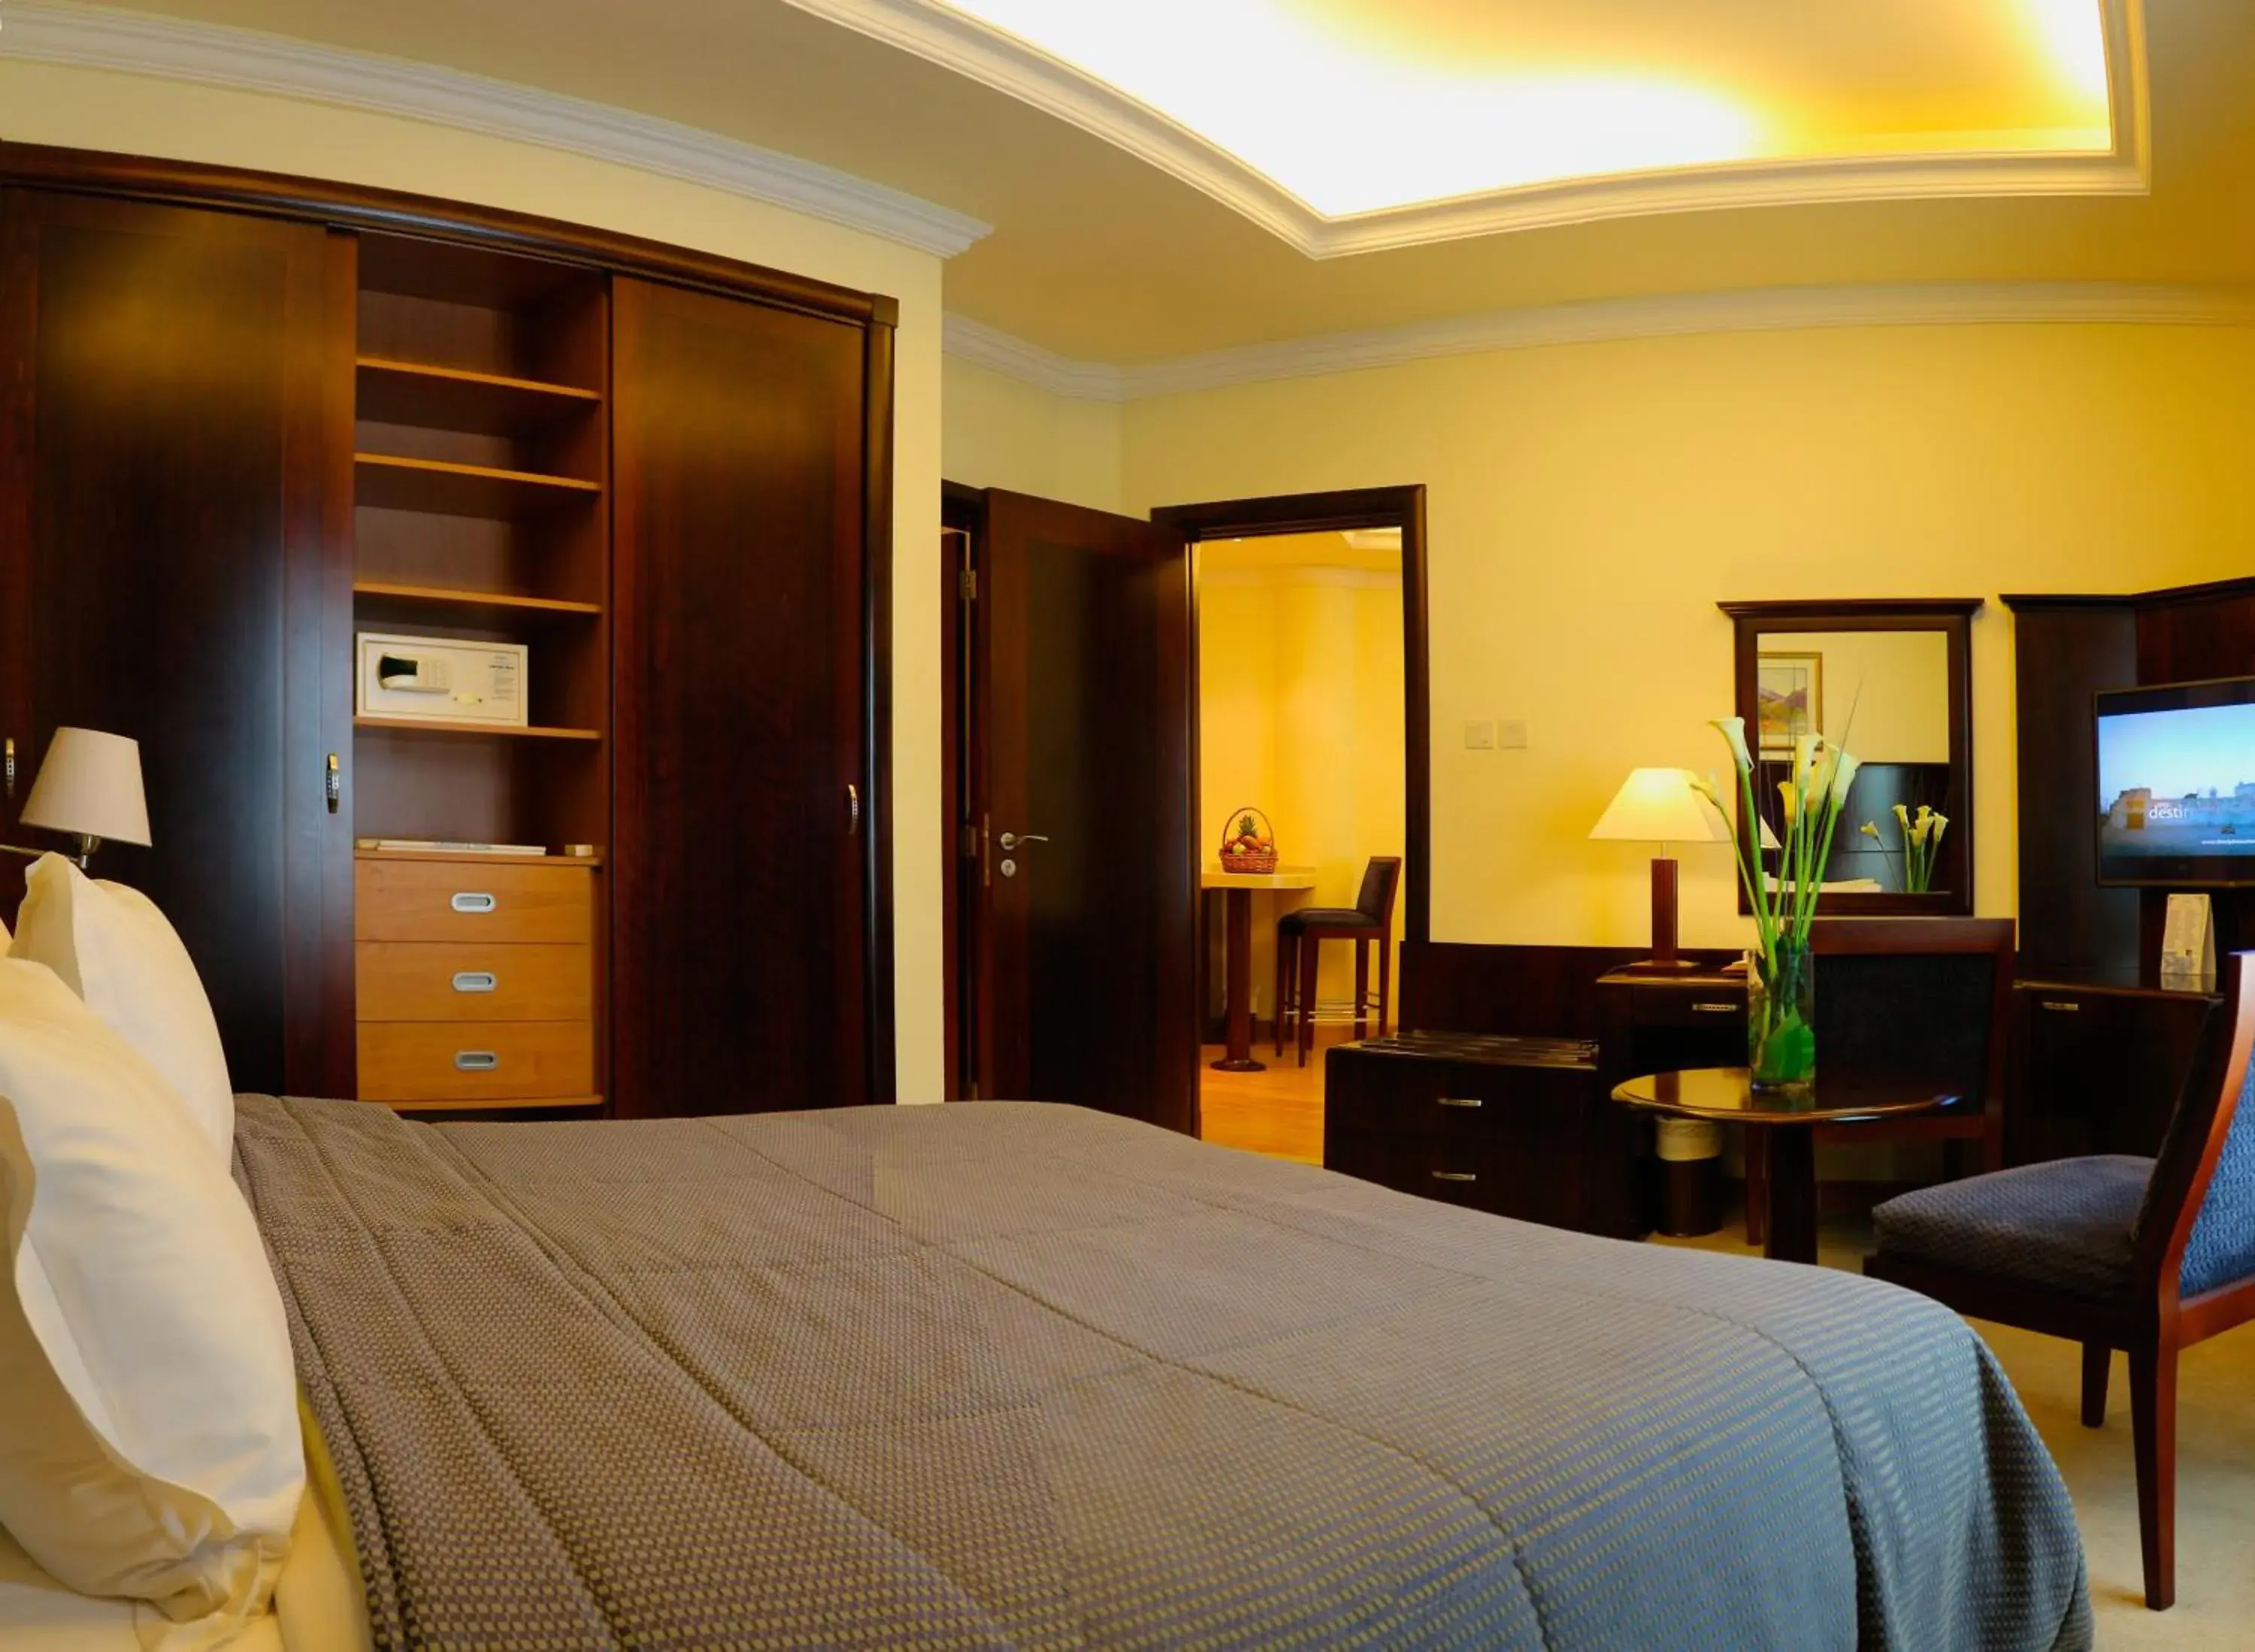 Bedroom, Room Photo in Sharjah Premiere Hotel & Resort